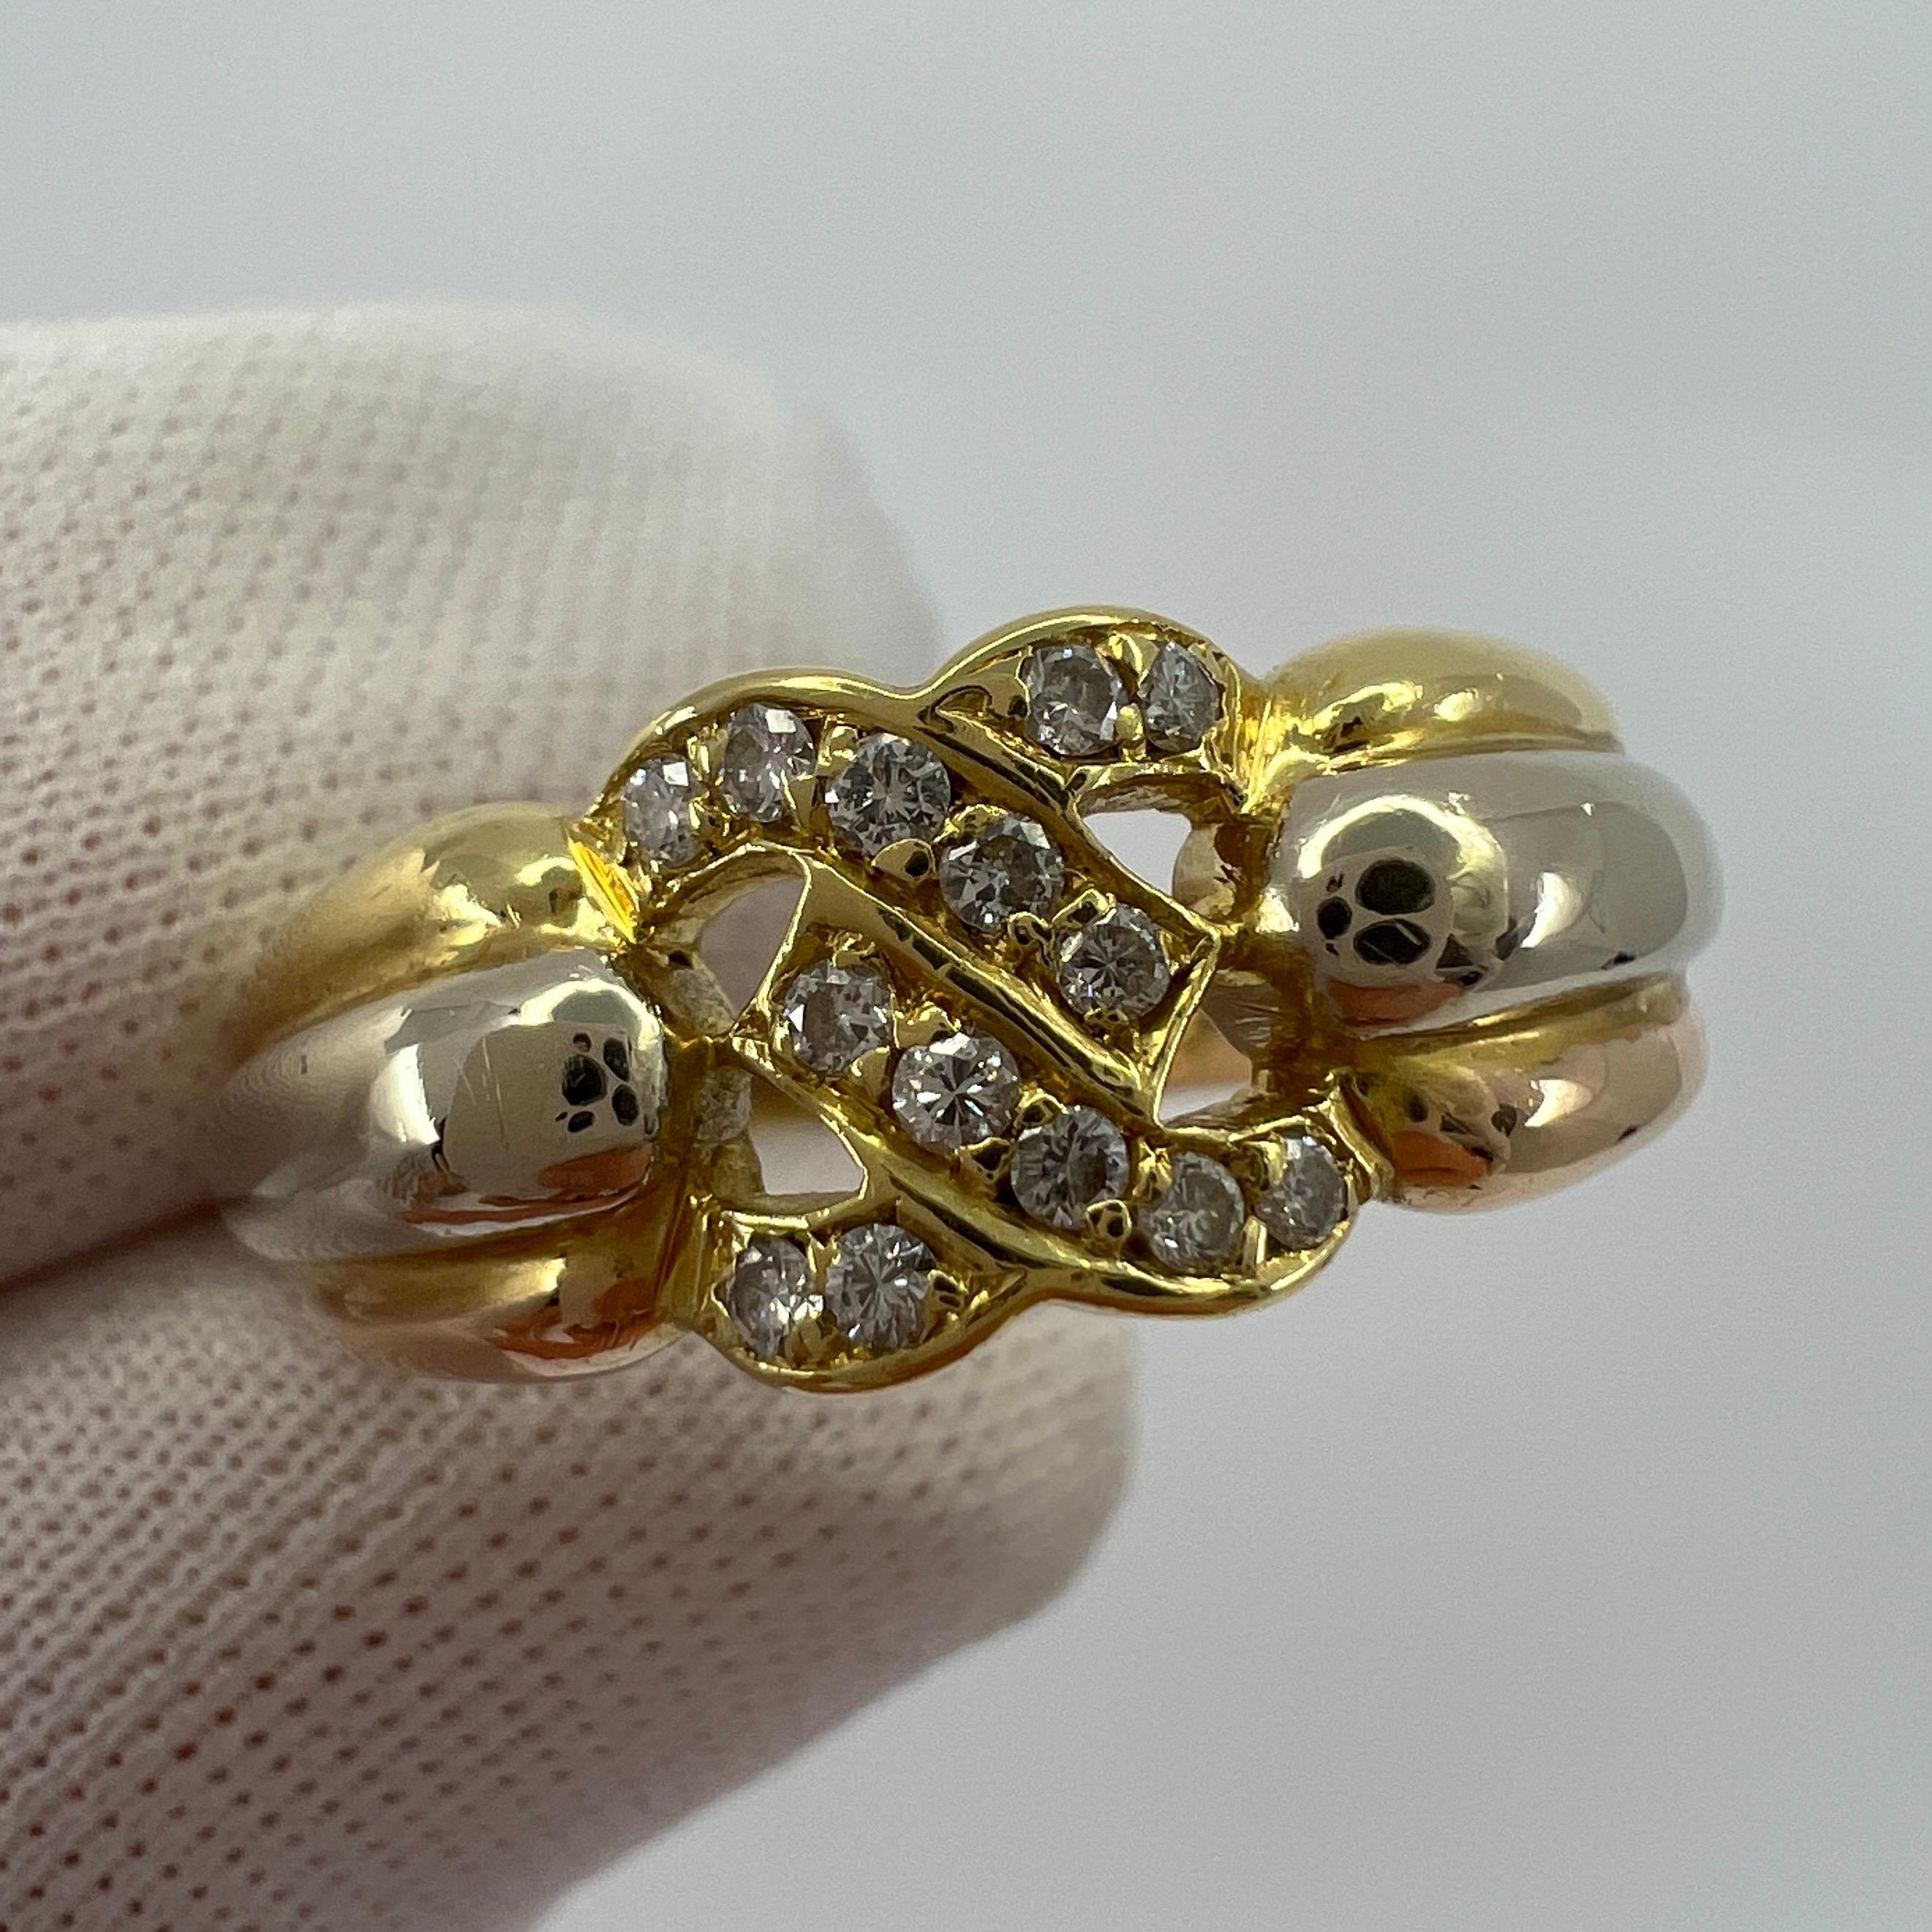 Seltener Vintage Cartier C Diamond Tri Colour 18k Gold Ring.

Atemberaubender dreifarbiger/mehrfarbiger Goldring mit dem ikonischen gekreuzten 'C' von Cartier. 

Die ineinander greifenden C's sind mit 14 runden farblosen Diamanten besetzt. Farbe